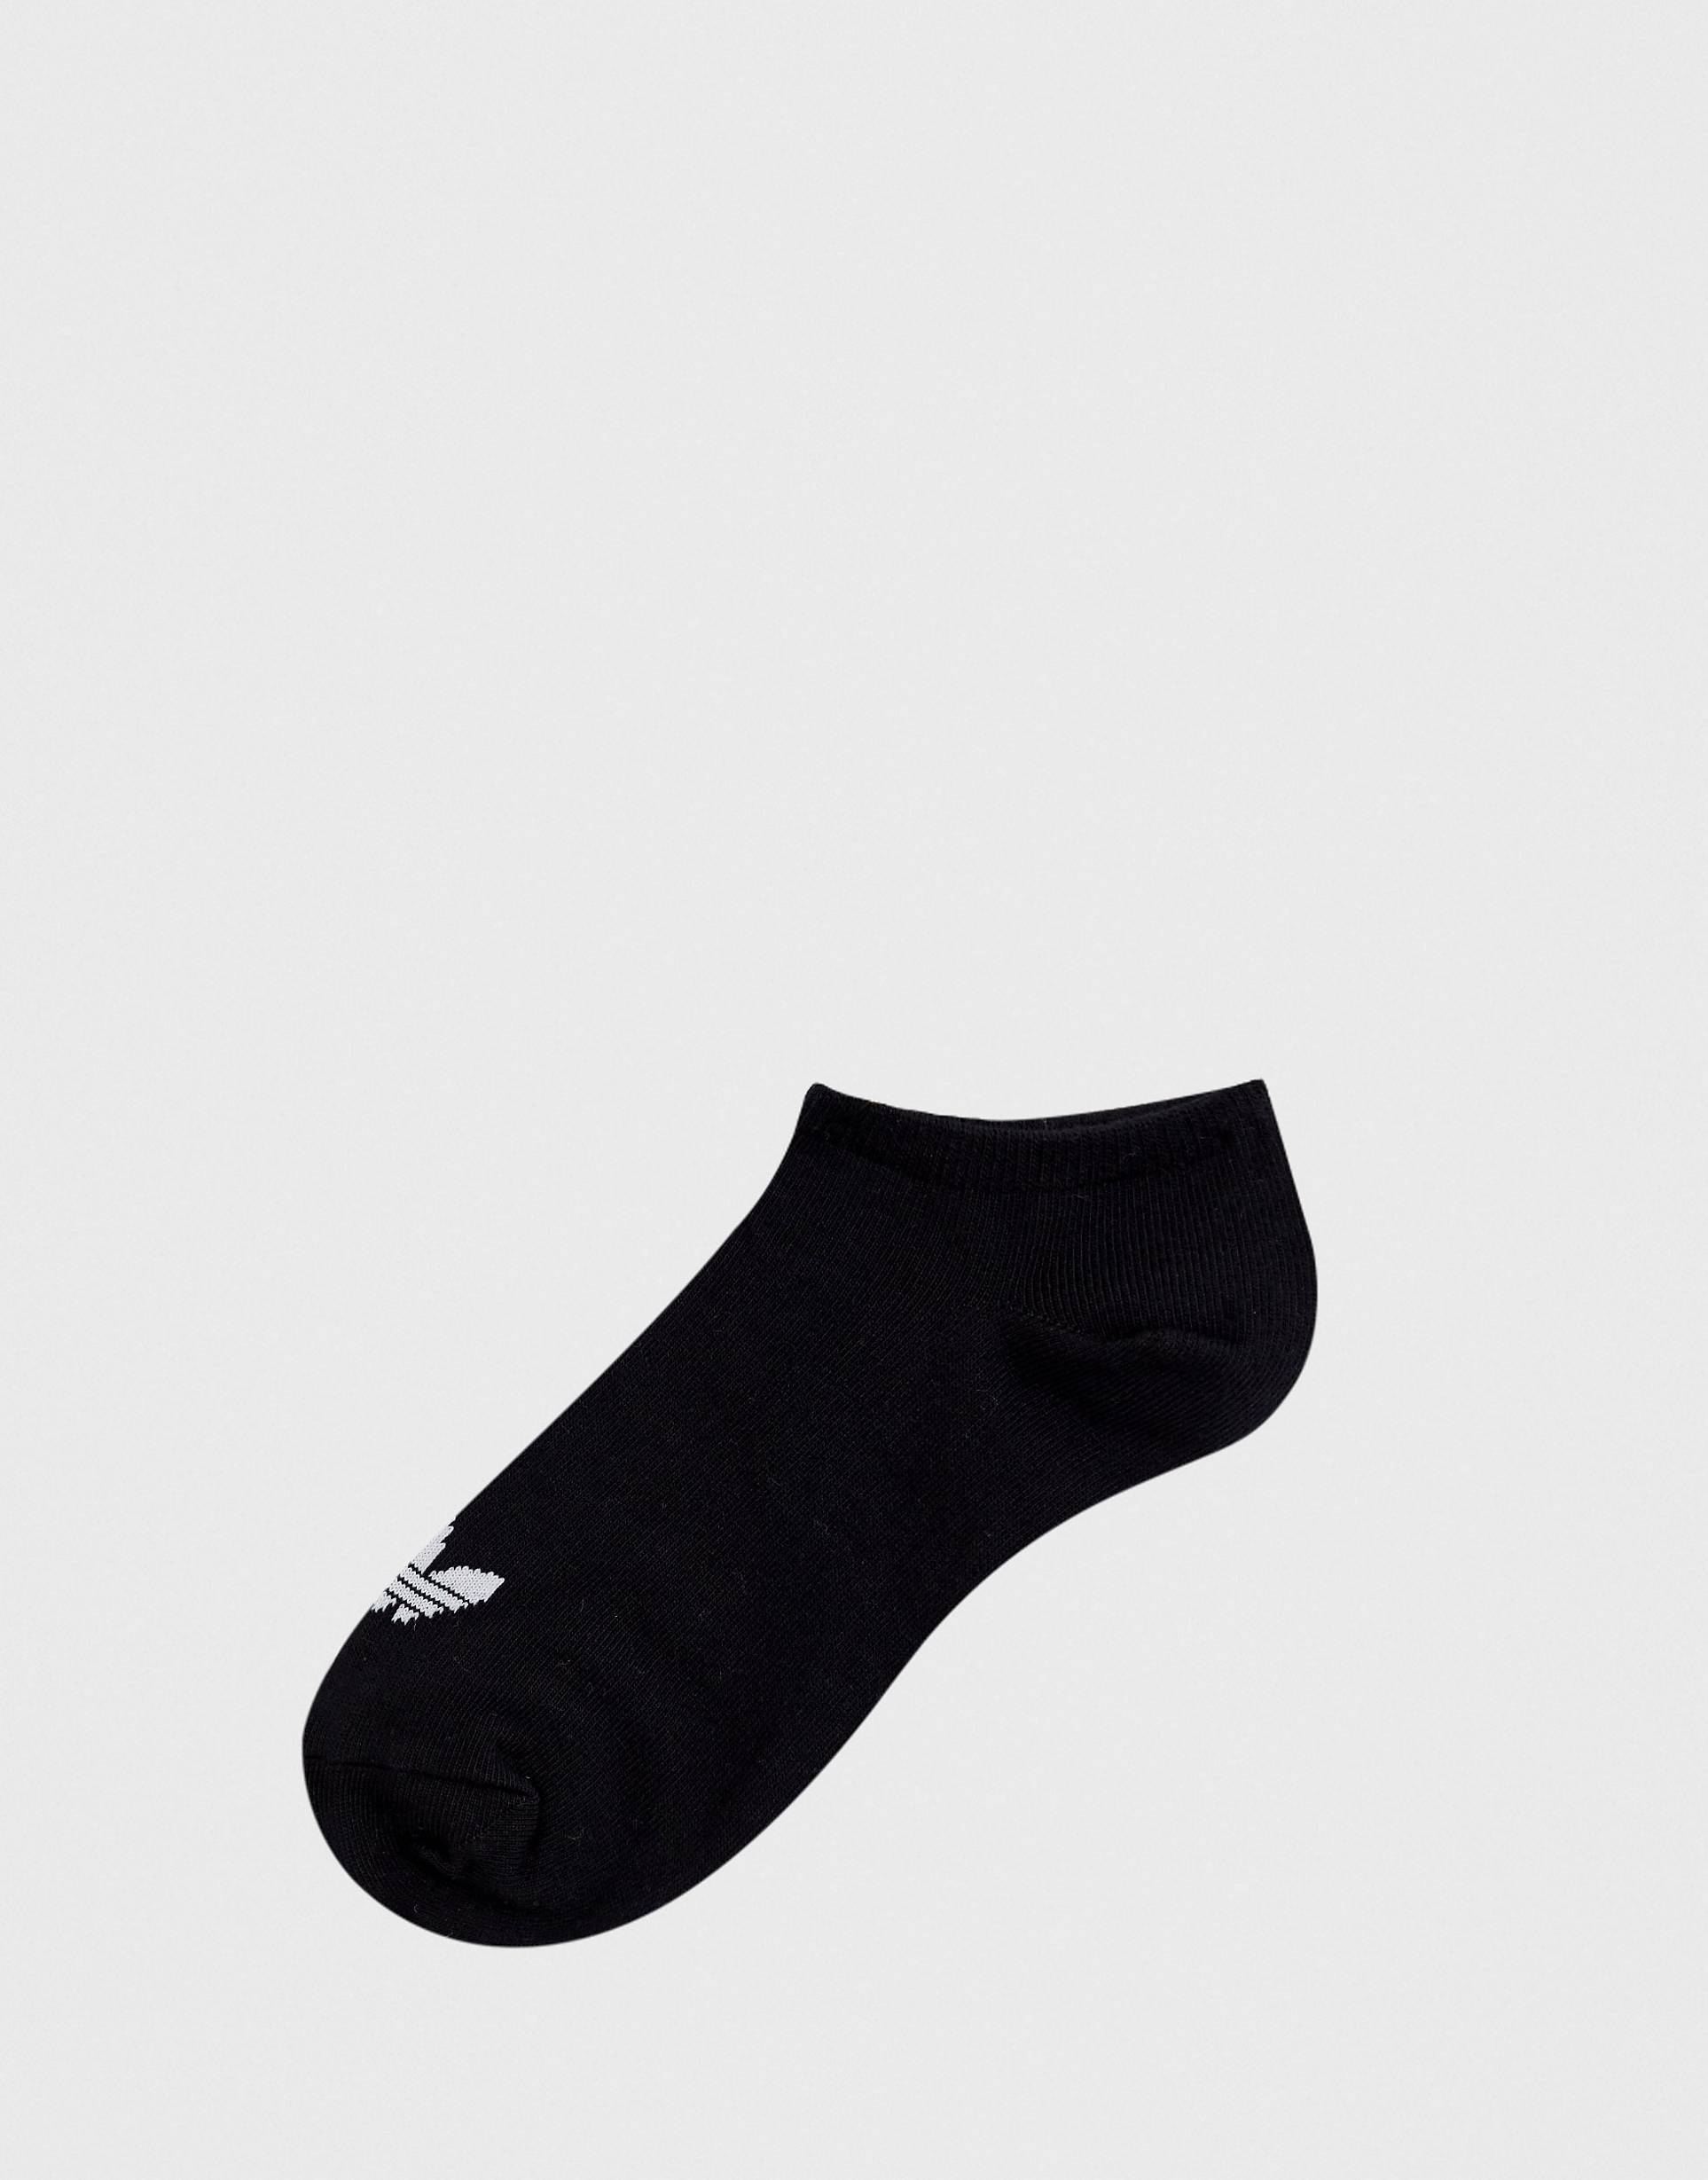 Короткие черные носки. Носки Tommy Hilfiger черные. Носки черные мужские Кальвин Клейн. Носки Кальвин Кляйн. Носки черные Calvin Klein.